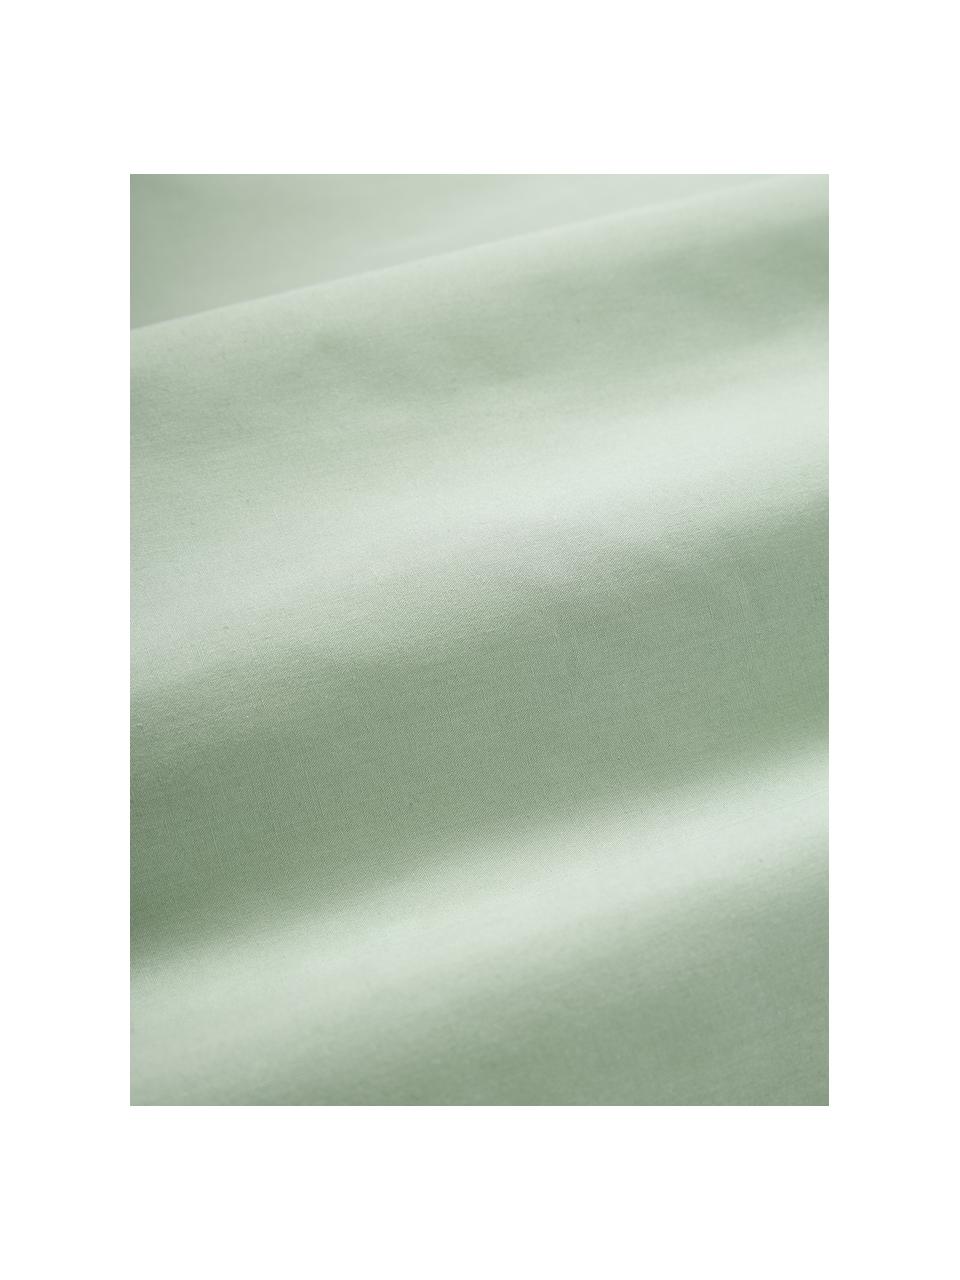 Poszewka na poduszkę z perkalu Elsie, 2 szt., Zielony, S 40 x D 80 cm